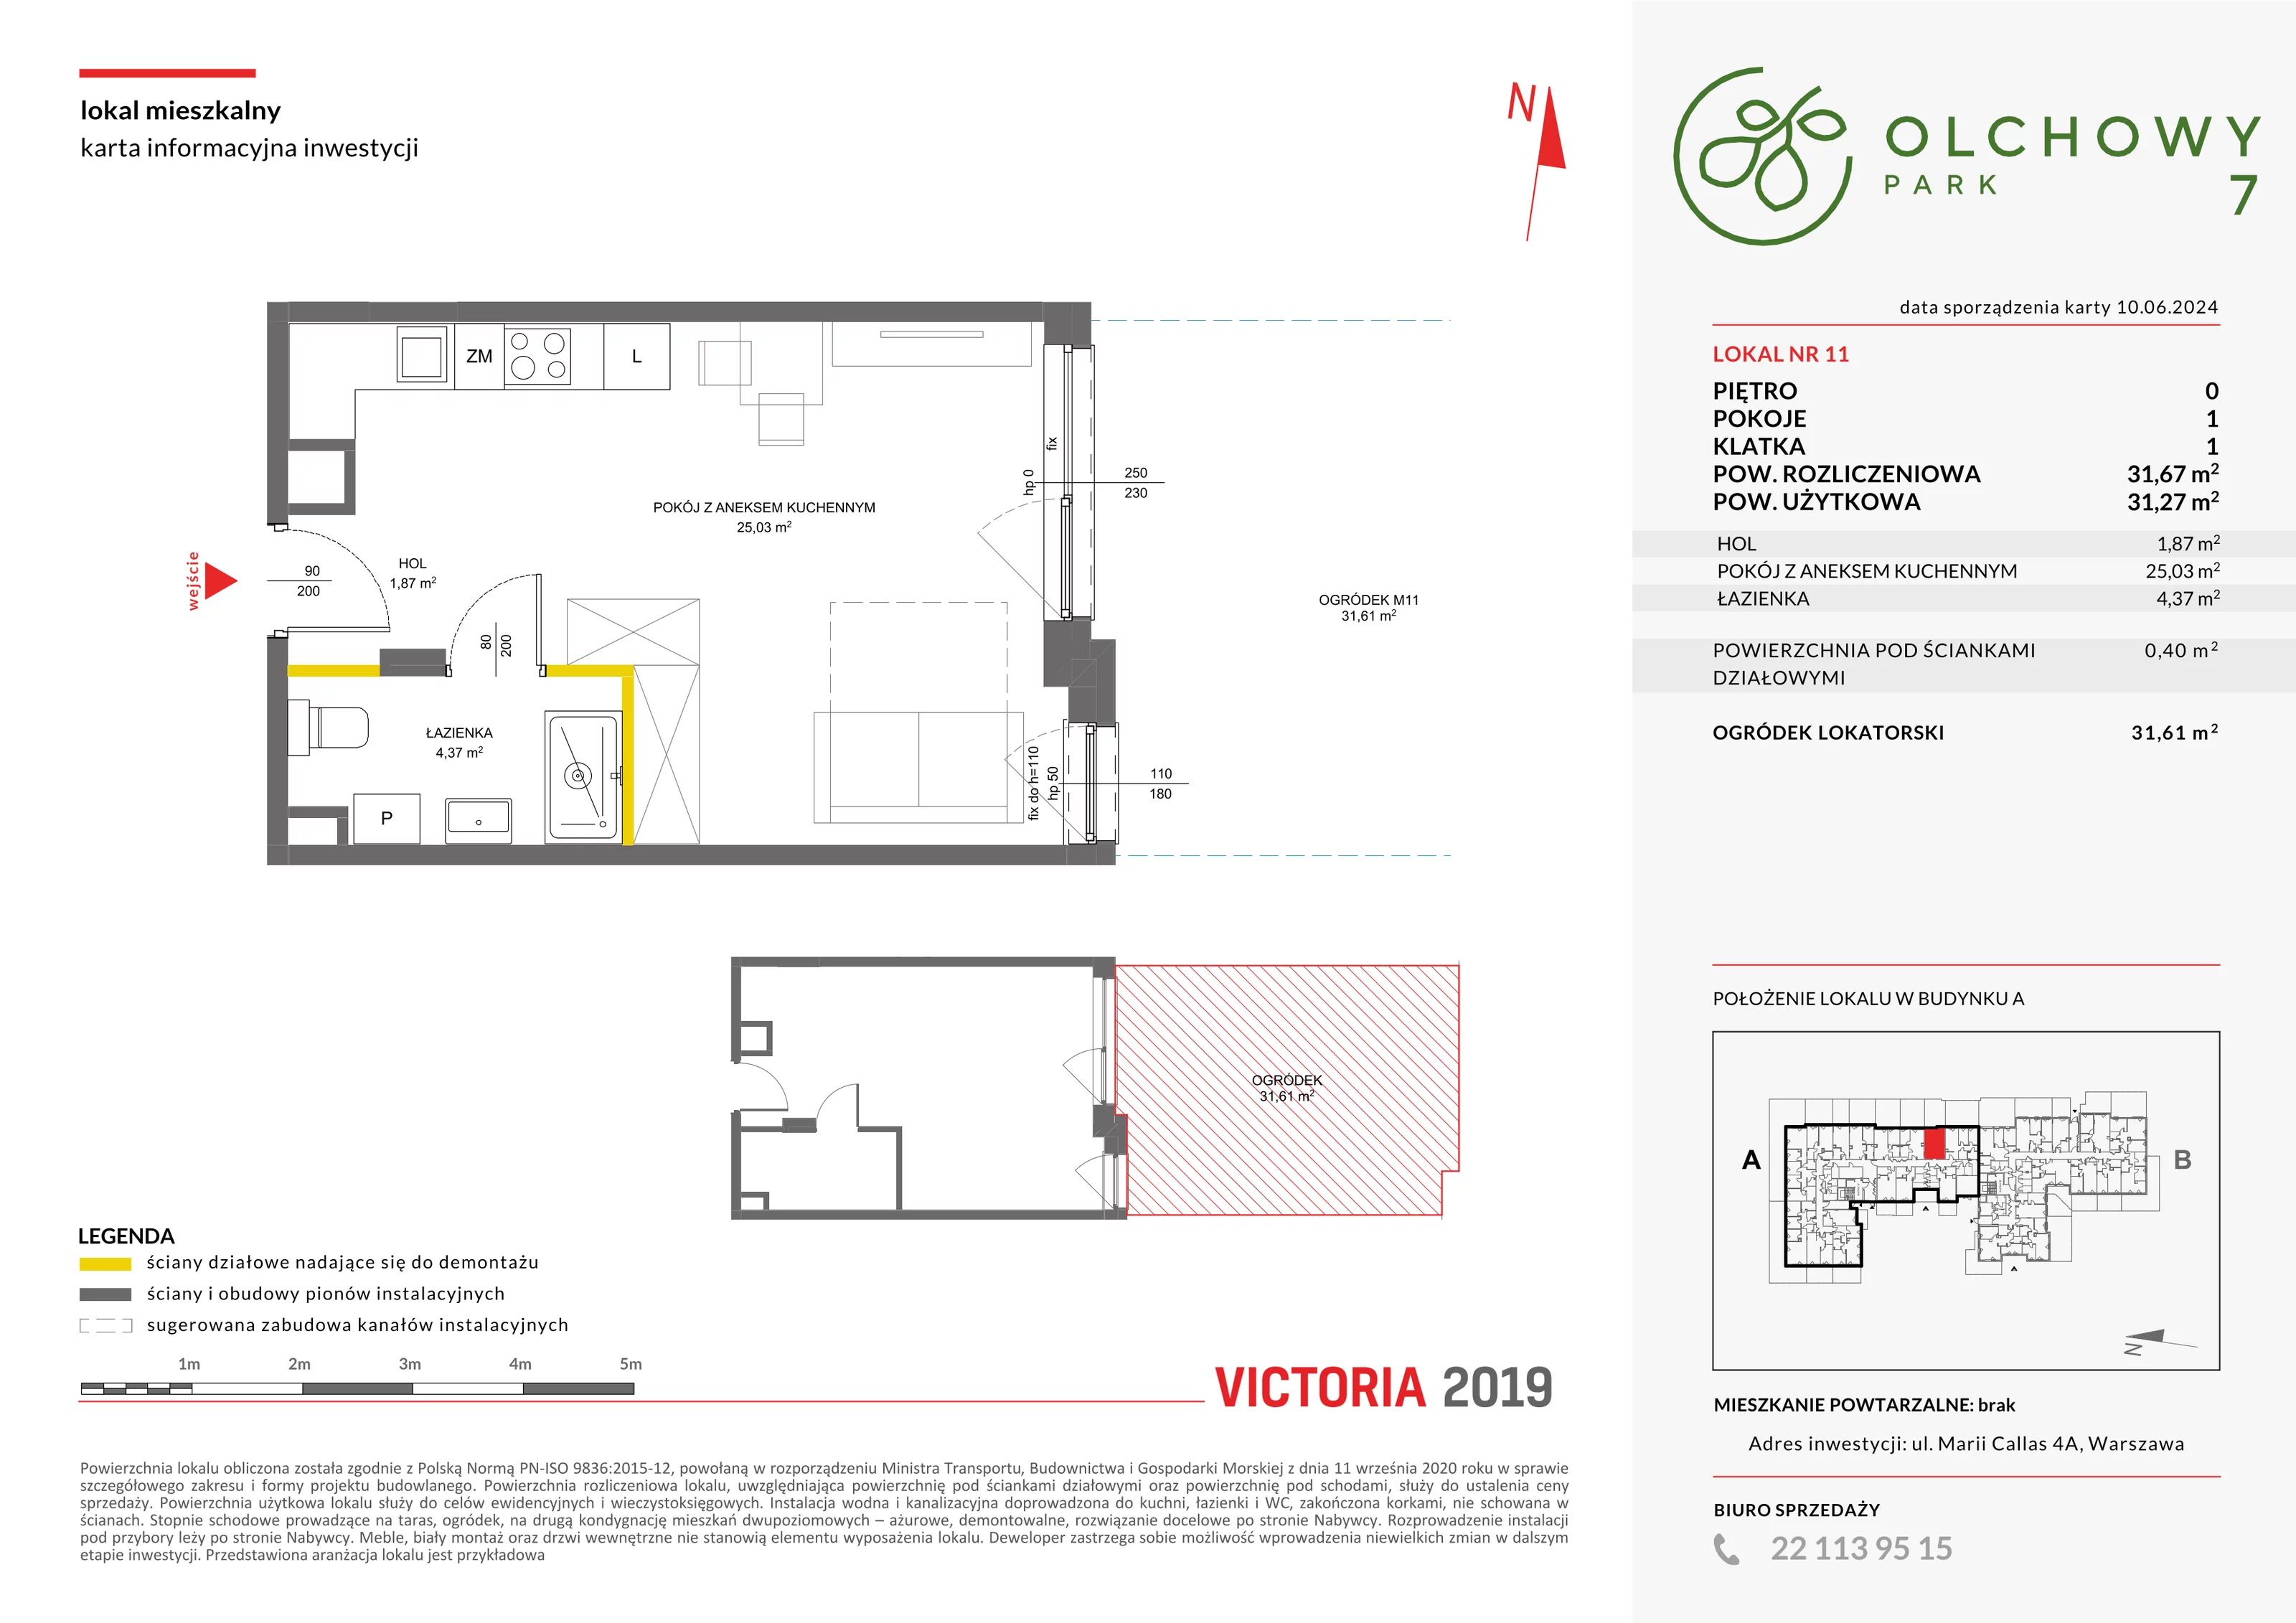 Mieszkanie 31,67 m², parter, oferta nr VII/11, Olchowy Park 7, Warszawa, Białołęka, Kobiałka, ul. Marii Callas 4A